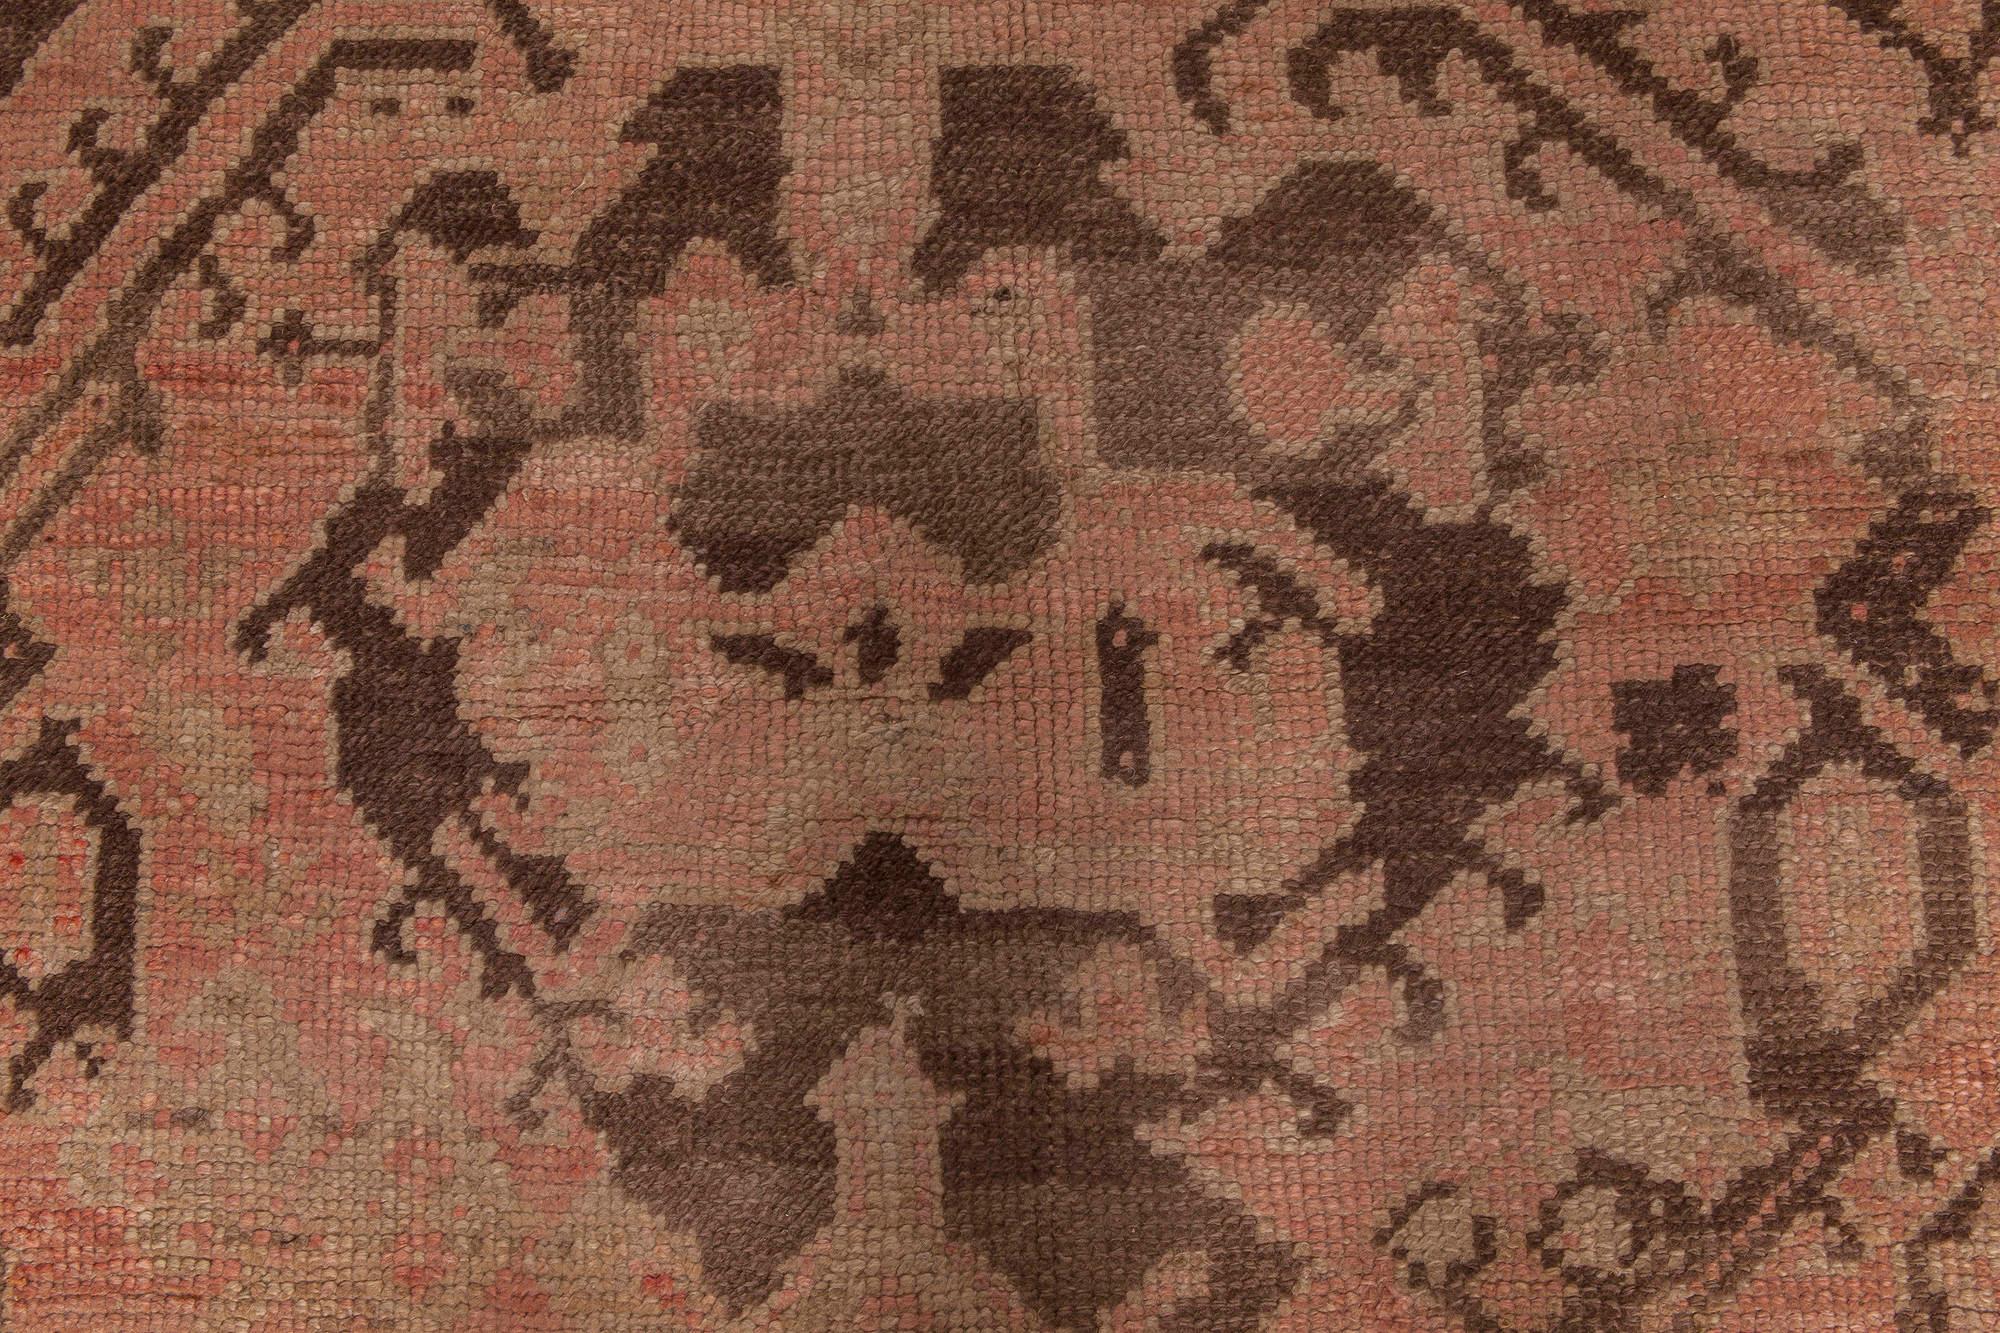 Türkischer Oushak-Teppich aus handgefärbter Wolle aus der Zeit um 1900
Größe: 17'6